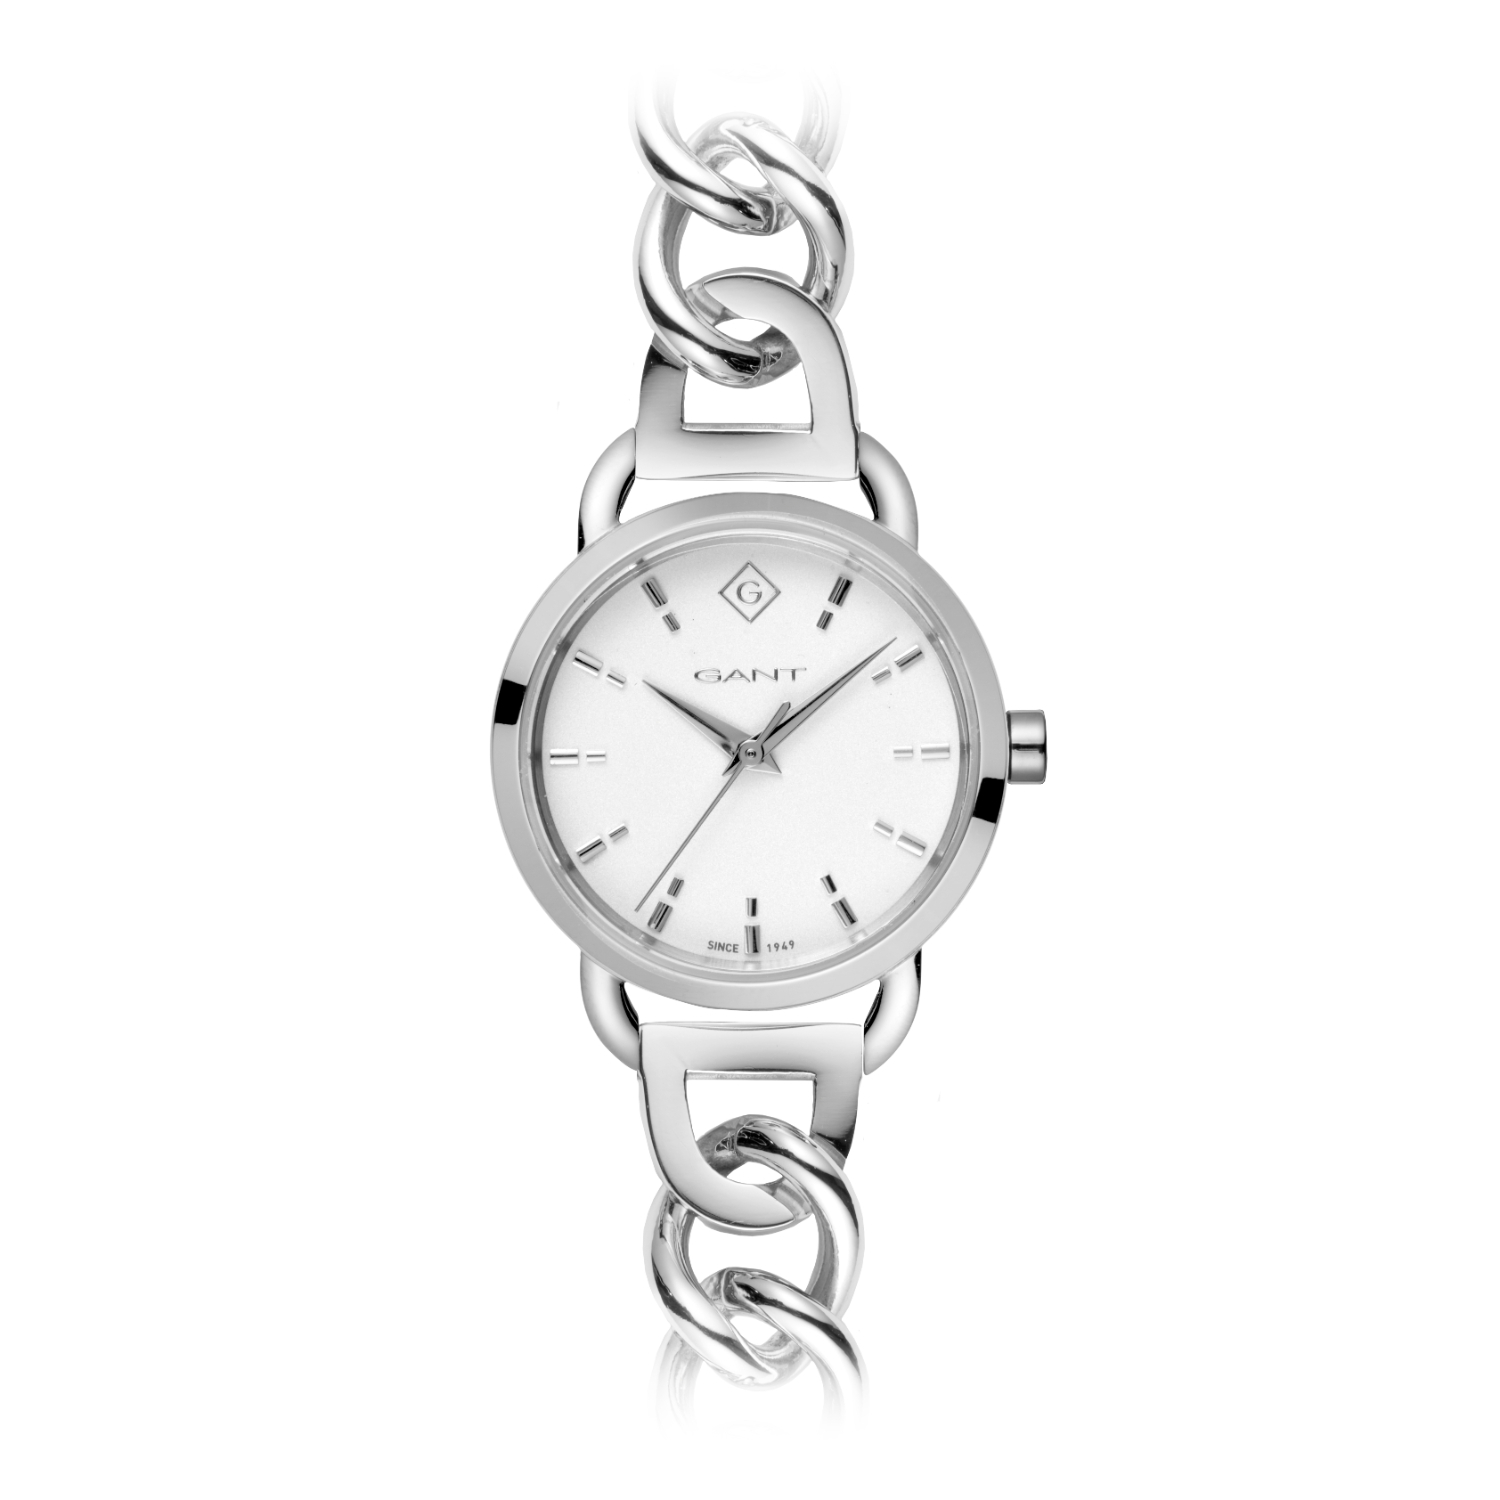 Γυναικείο ρολόι Gant από ανοξείδωτο ατσάλι με λευκό καντράν και μπρασελέ.